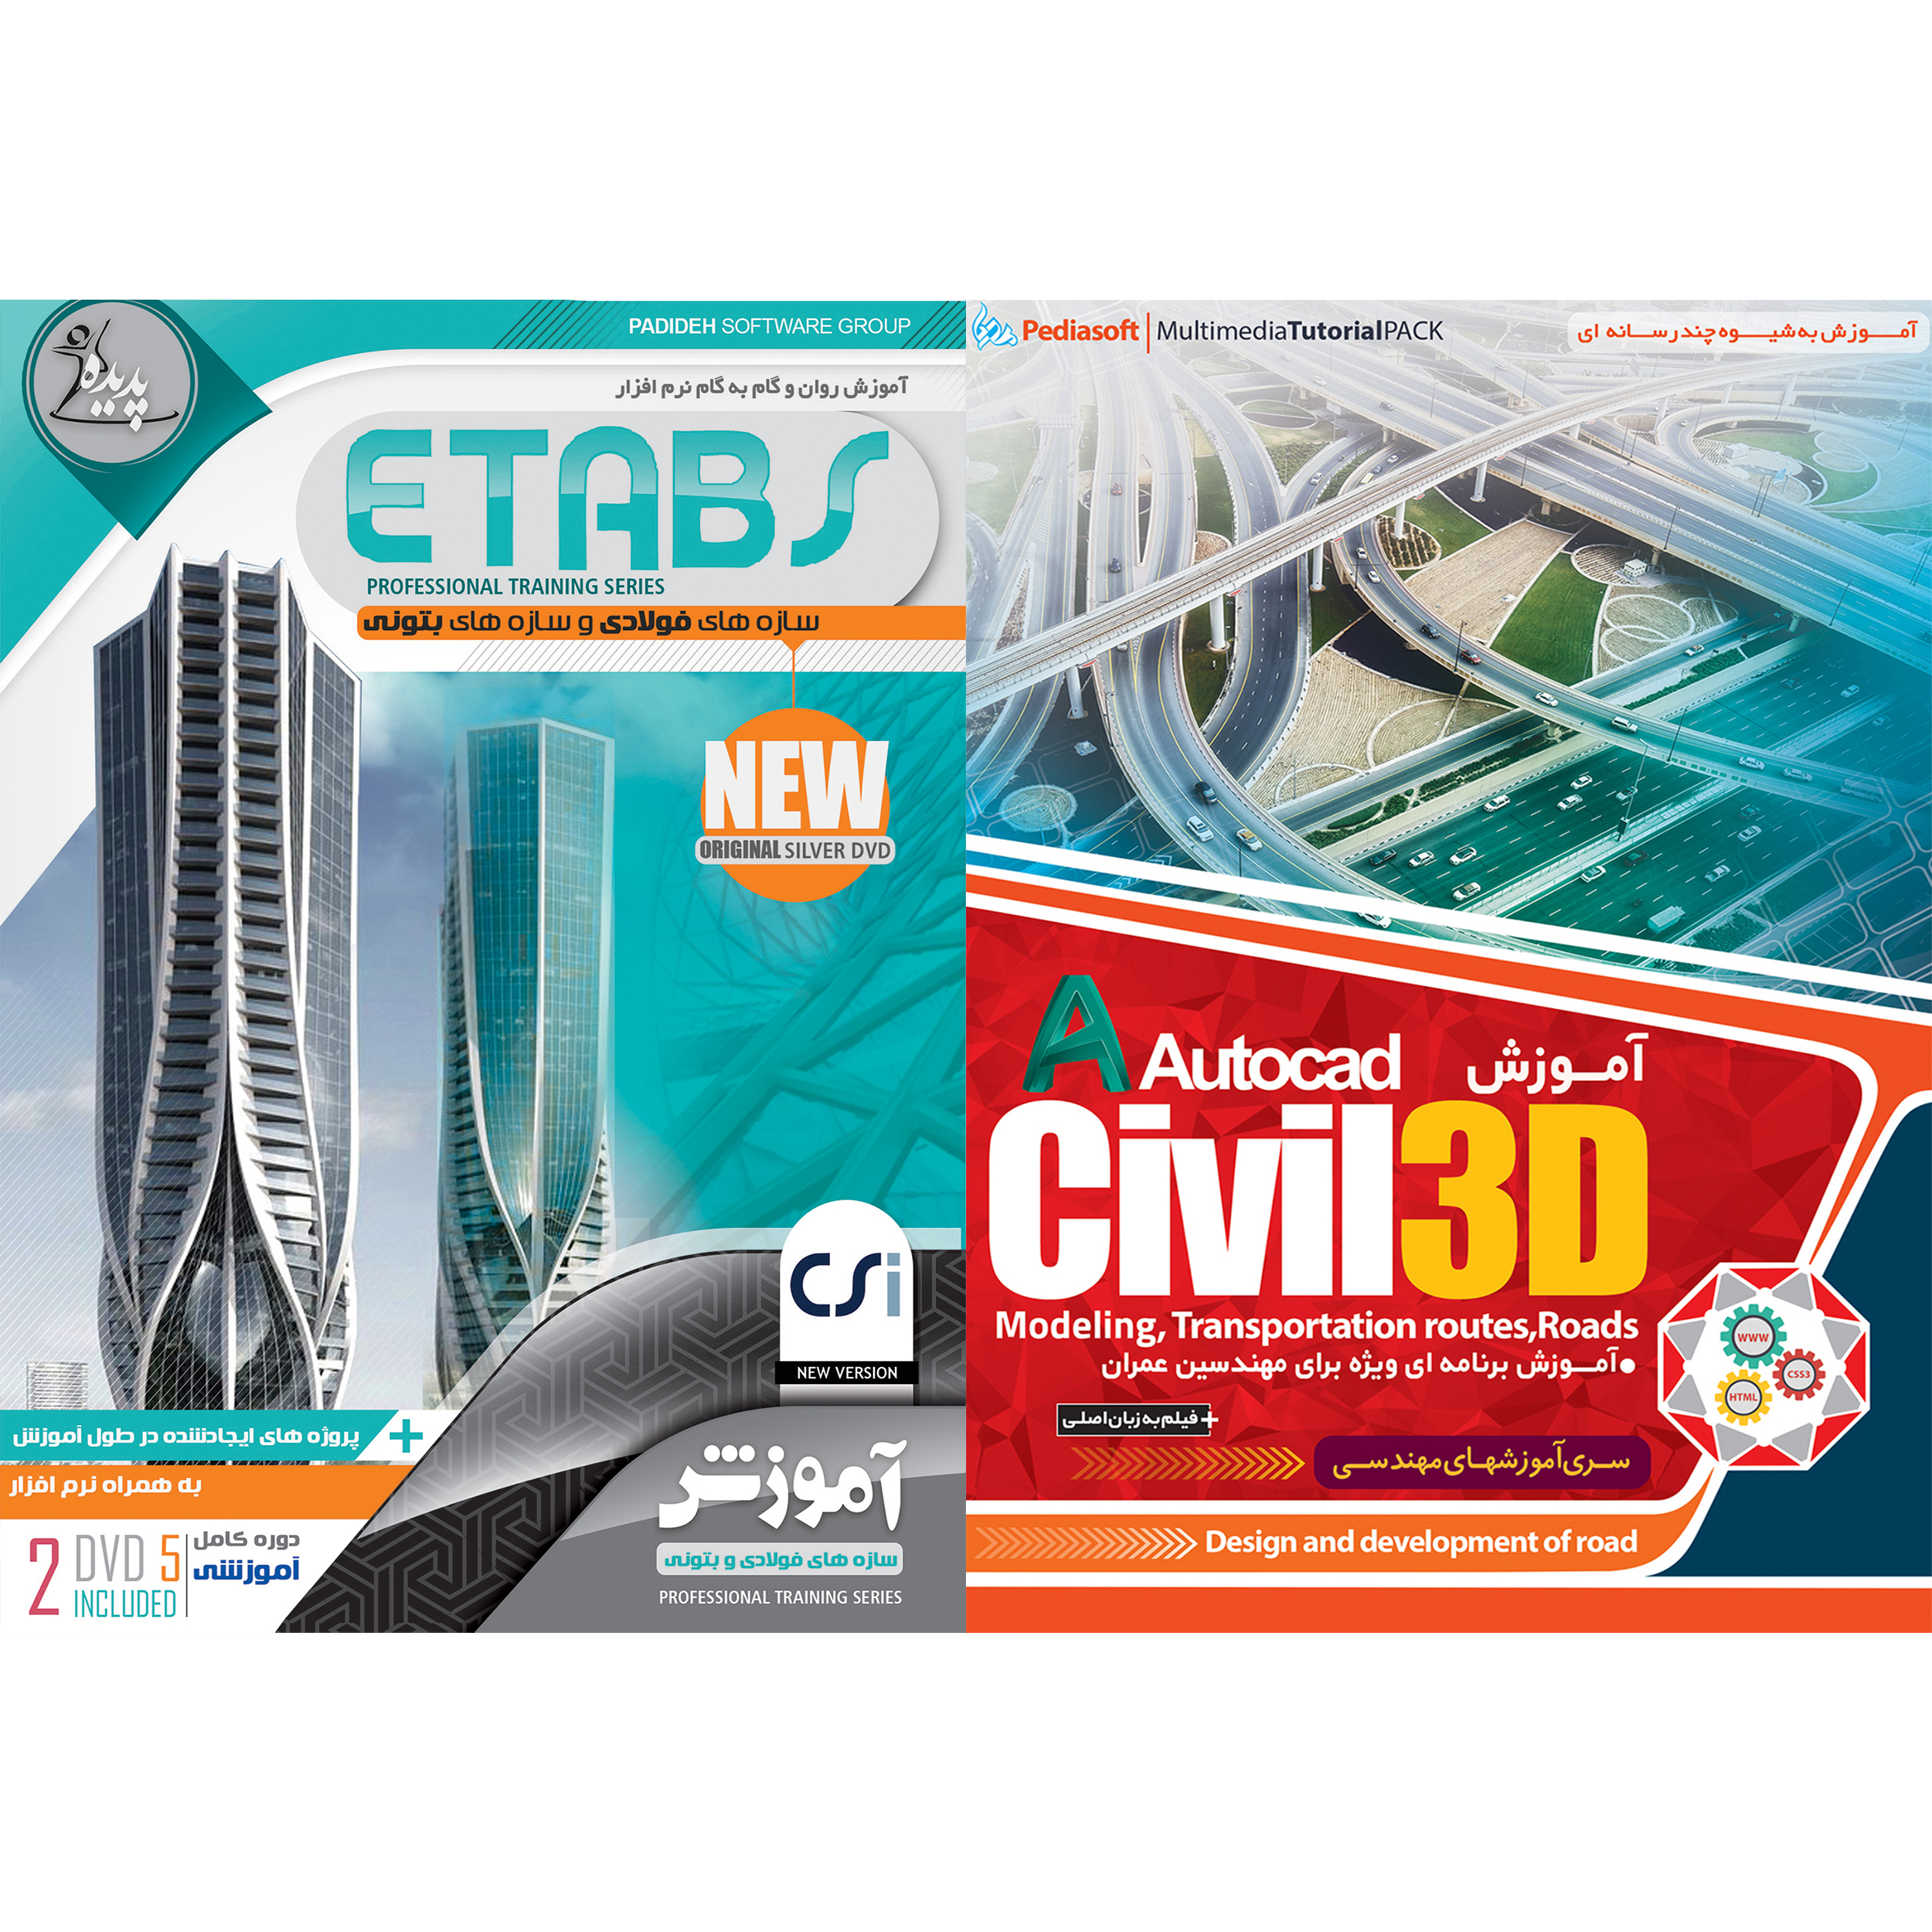 نرم افزار آموزش CIVIL 3D نشر پدیا سافت به همراه نرم افزار آموزش ETABS نشر پدیده